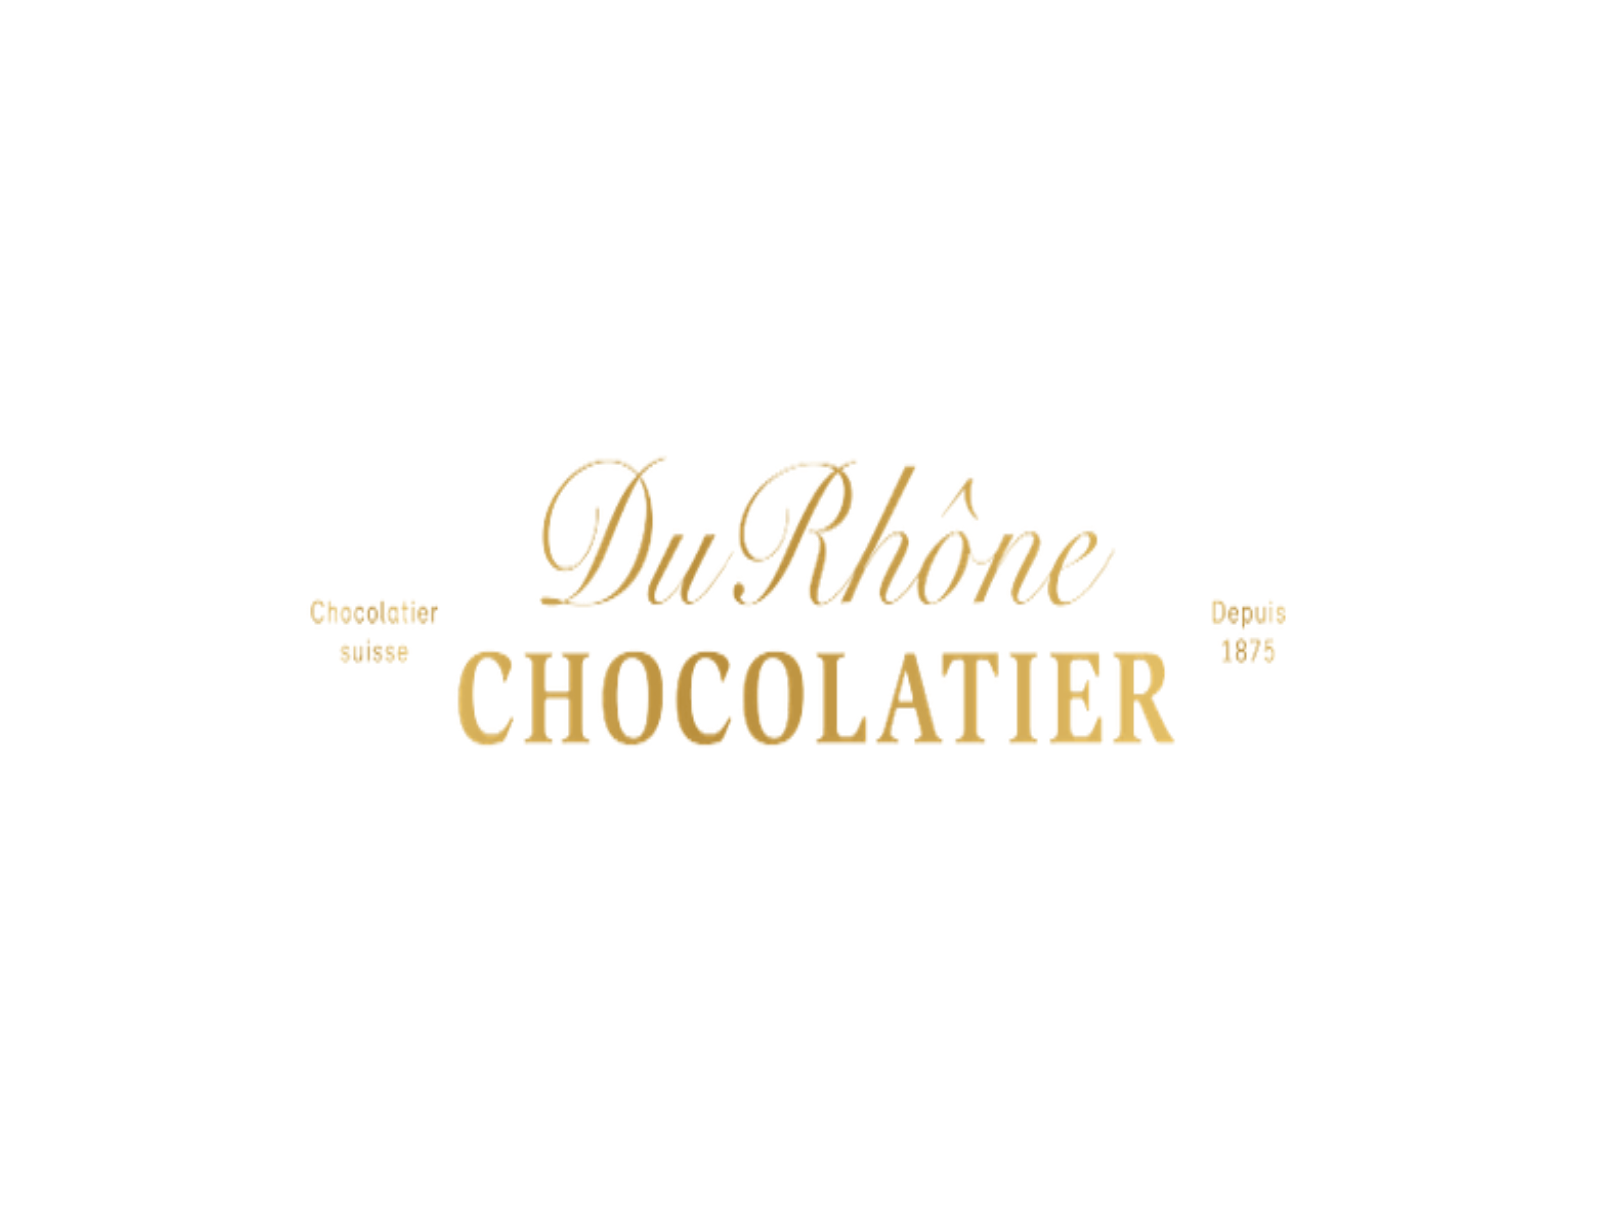 Du Rhone Chocolatier